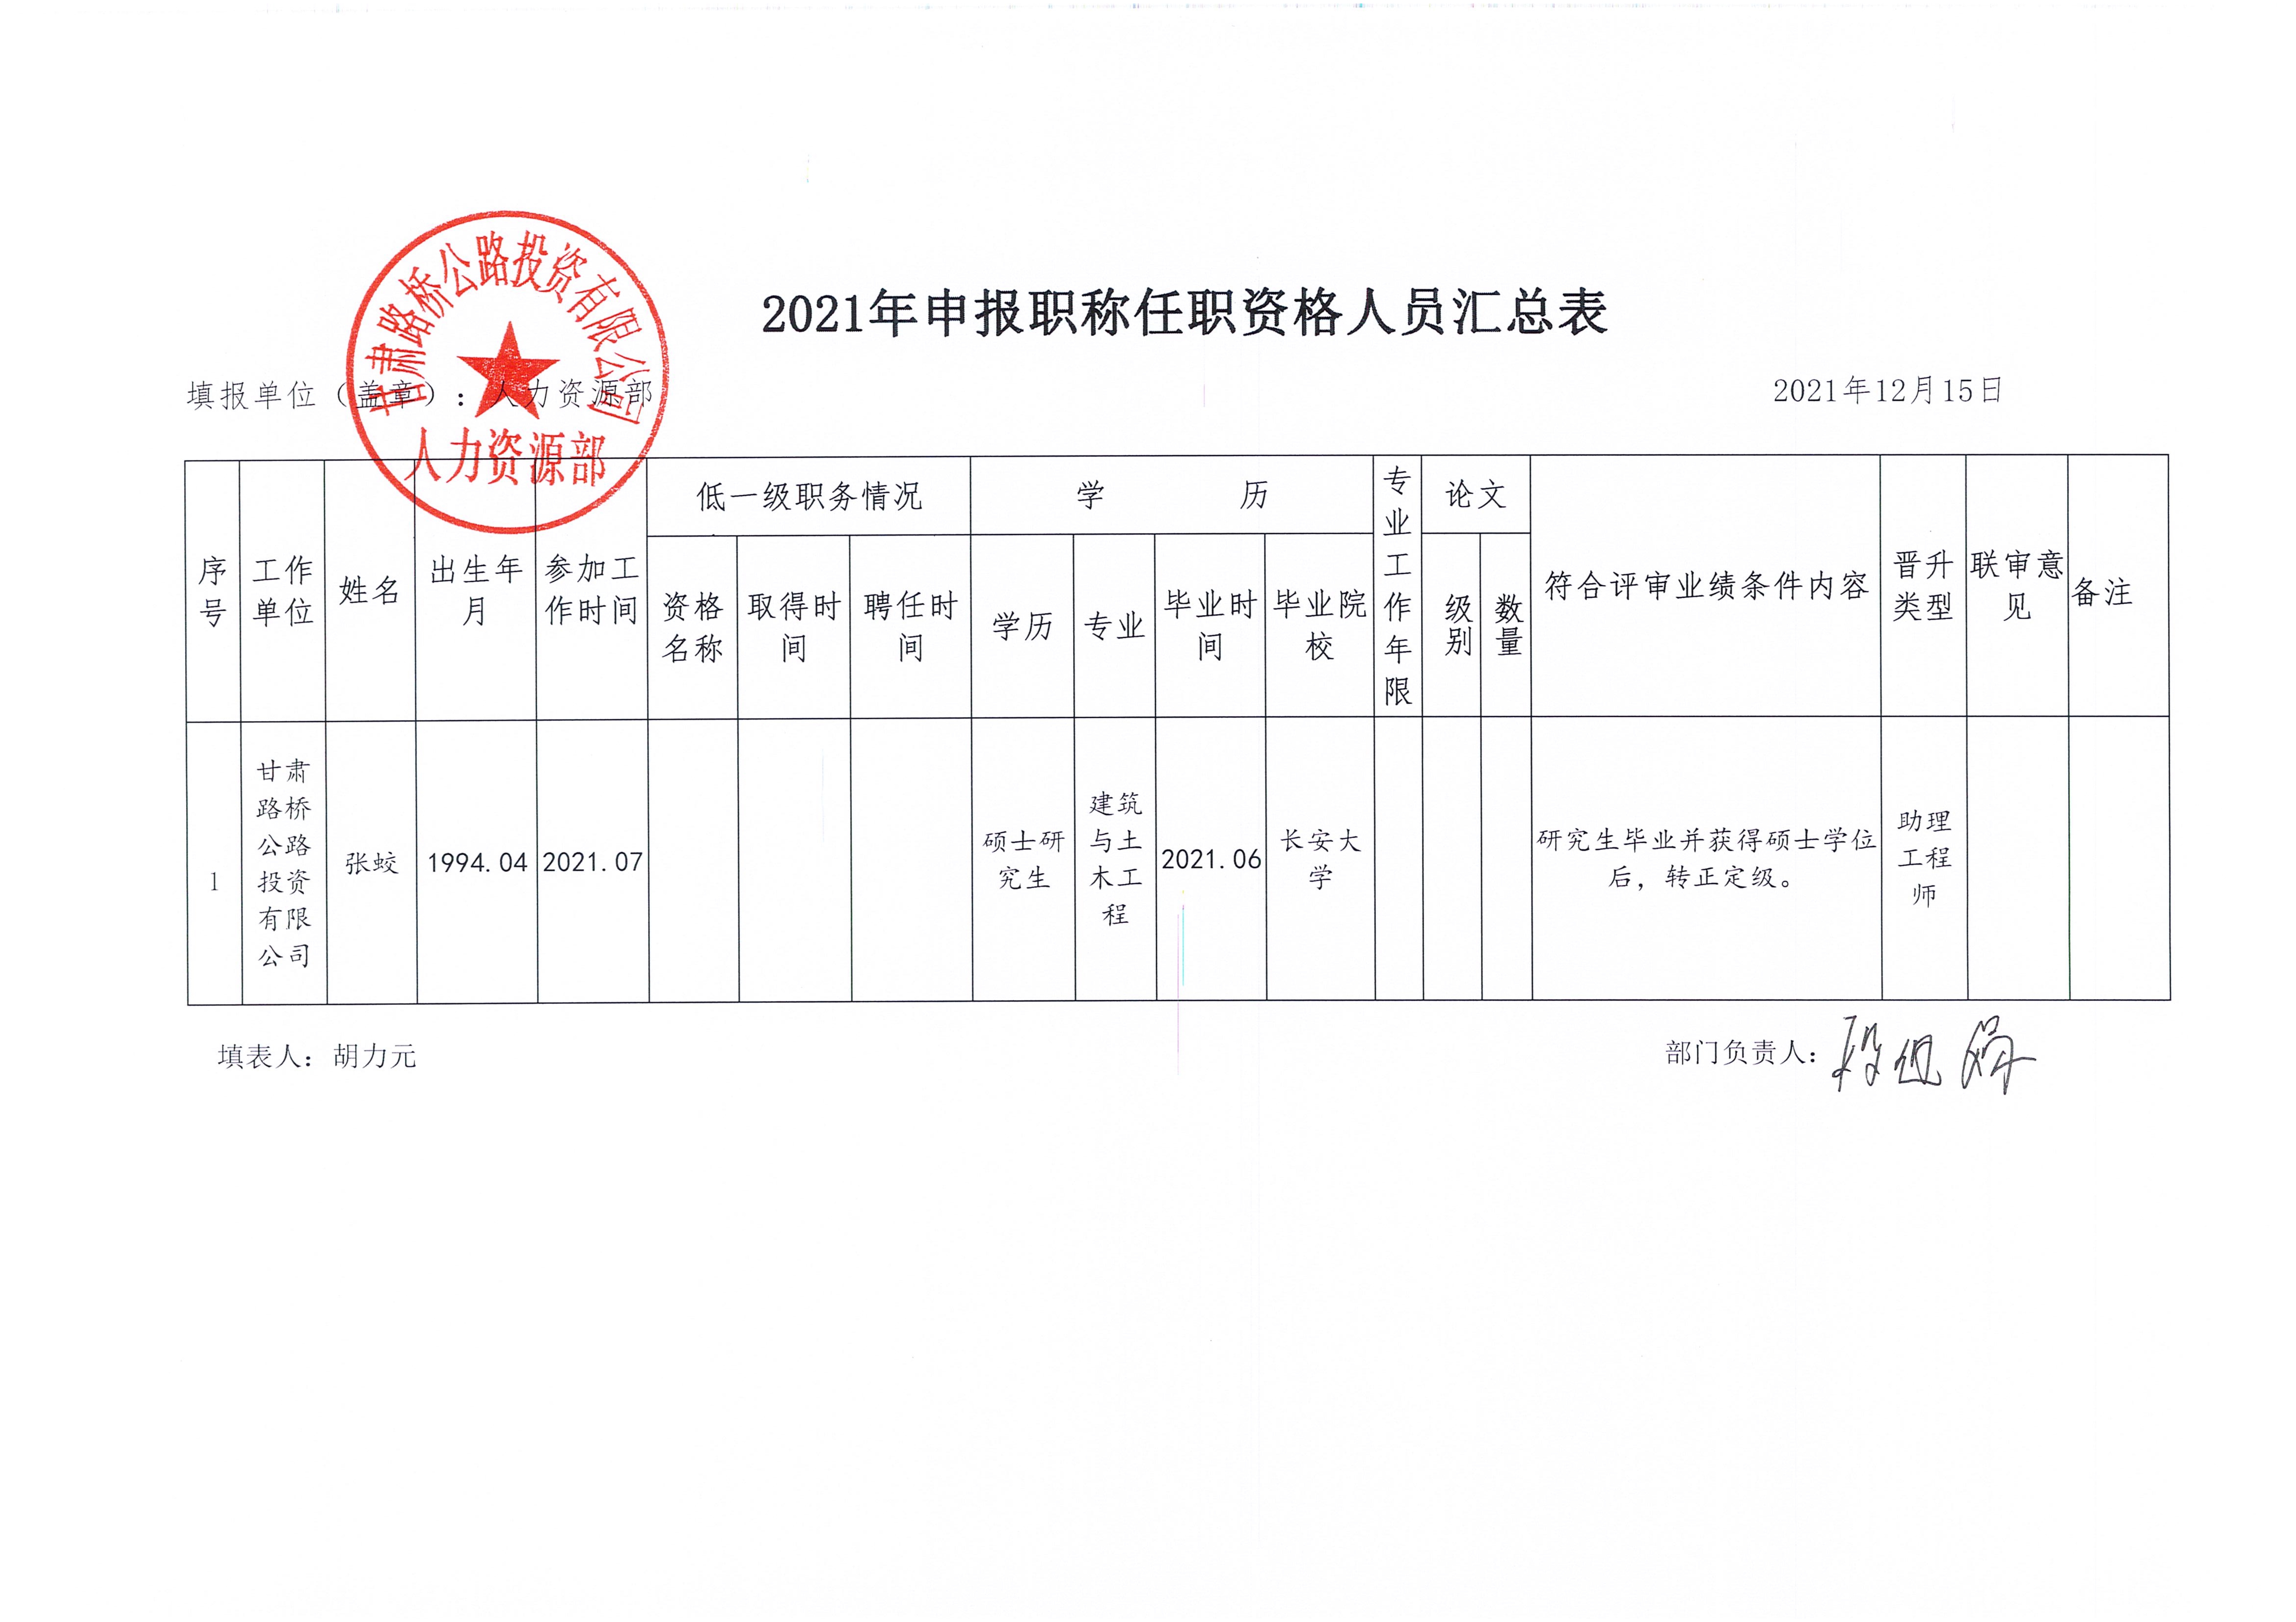 甘肃路桥公路投资有限公司关于张蛟同志认定职称的公示_2.jpg